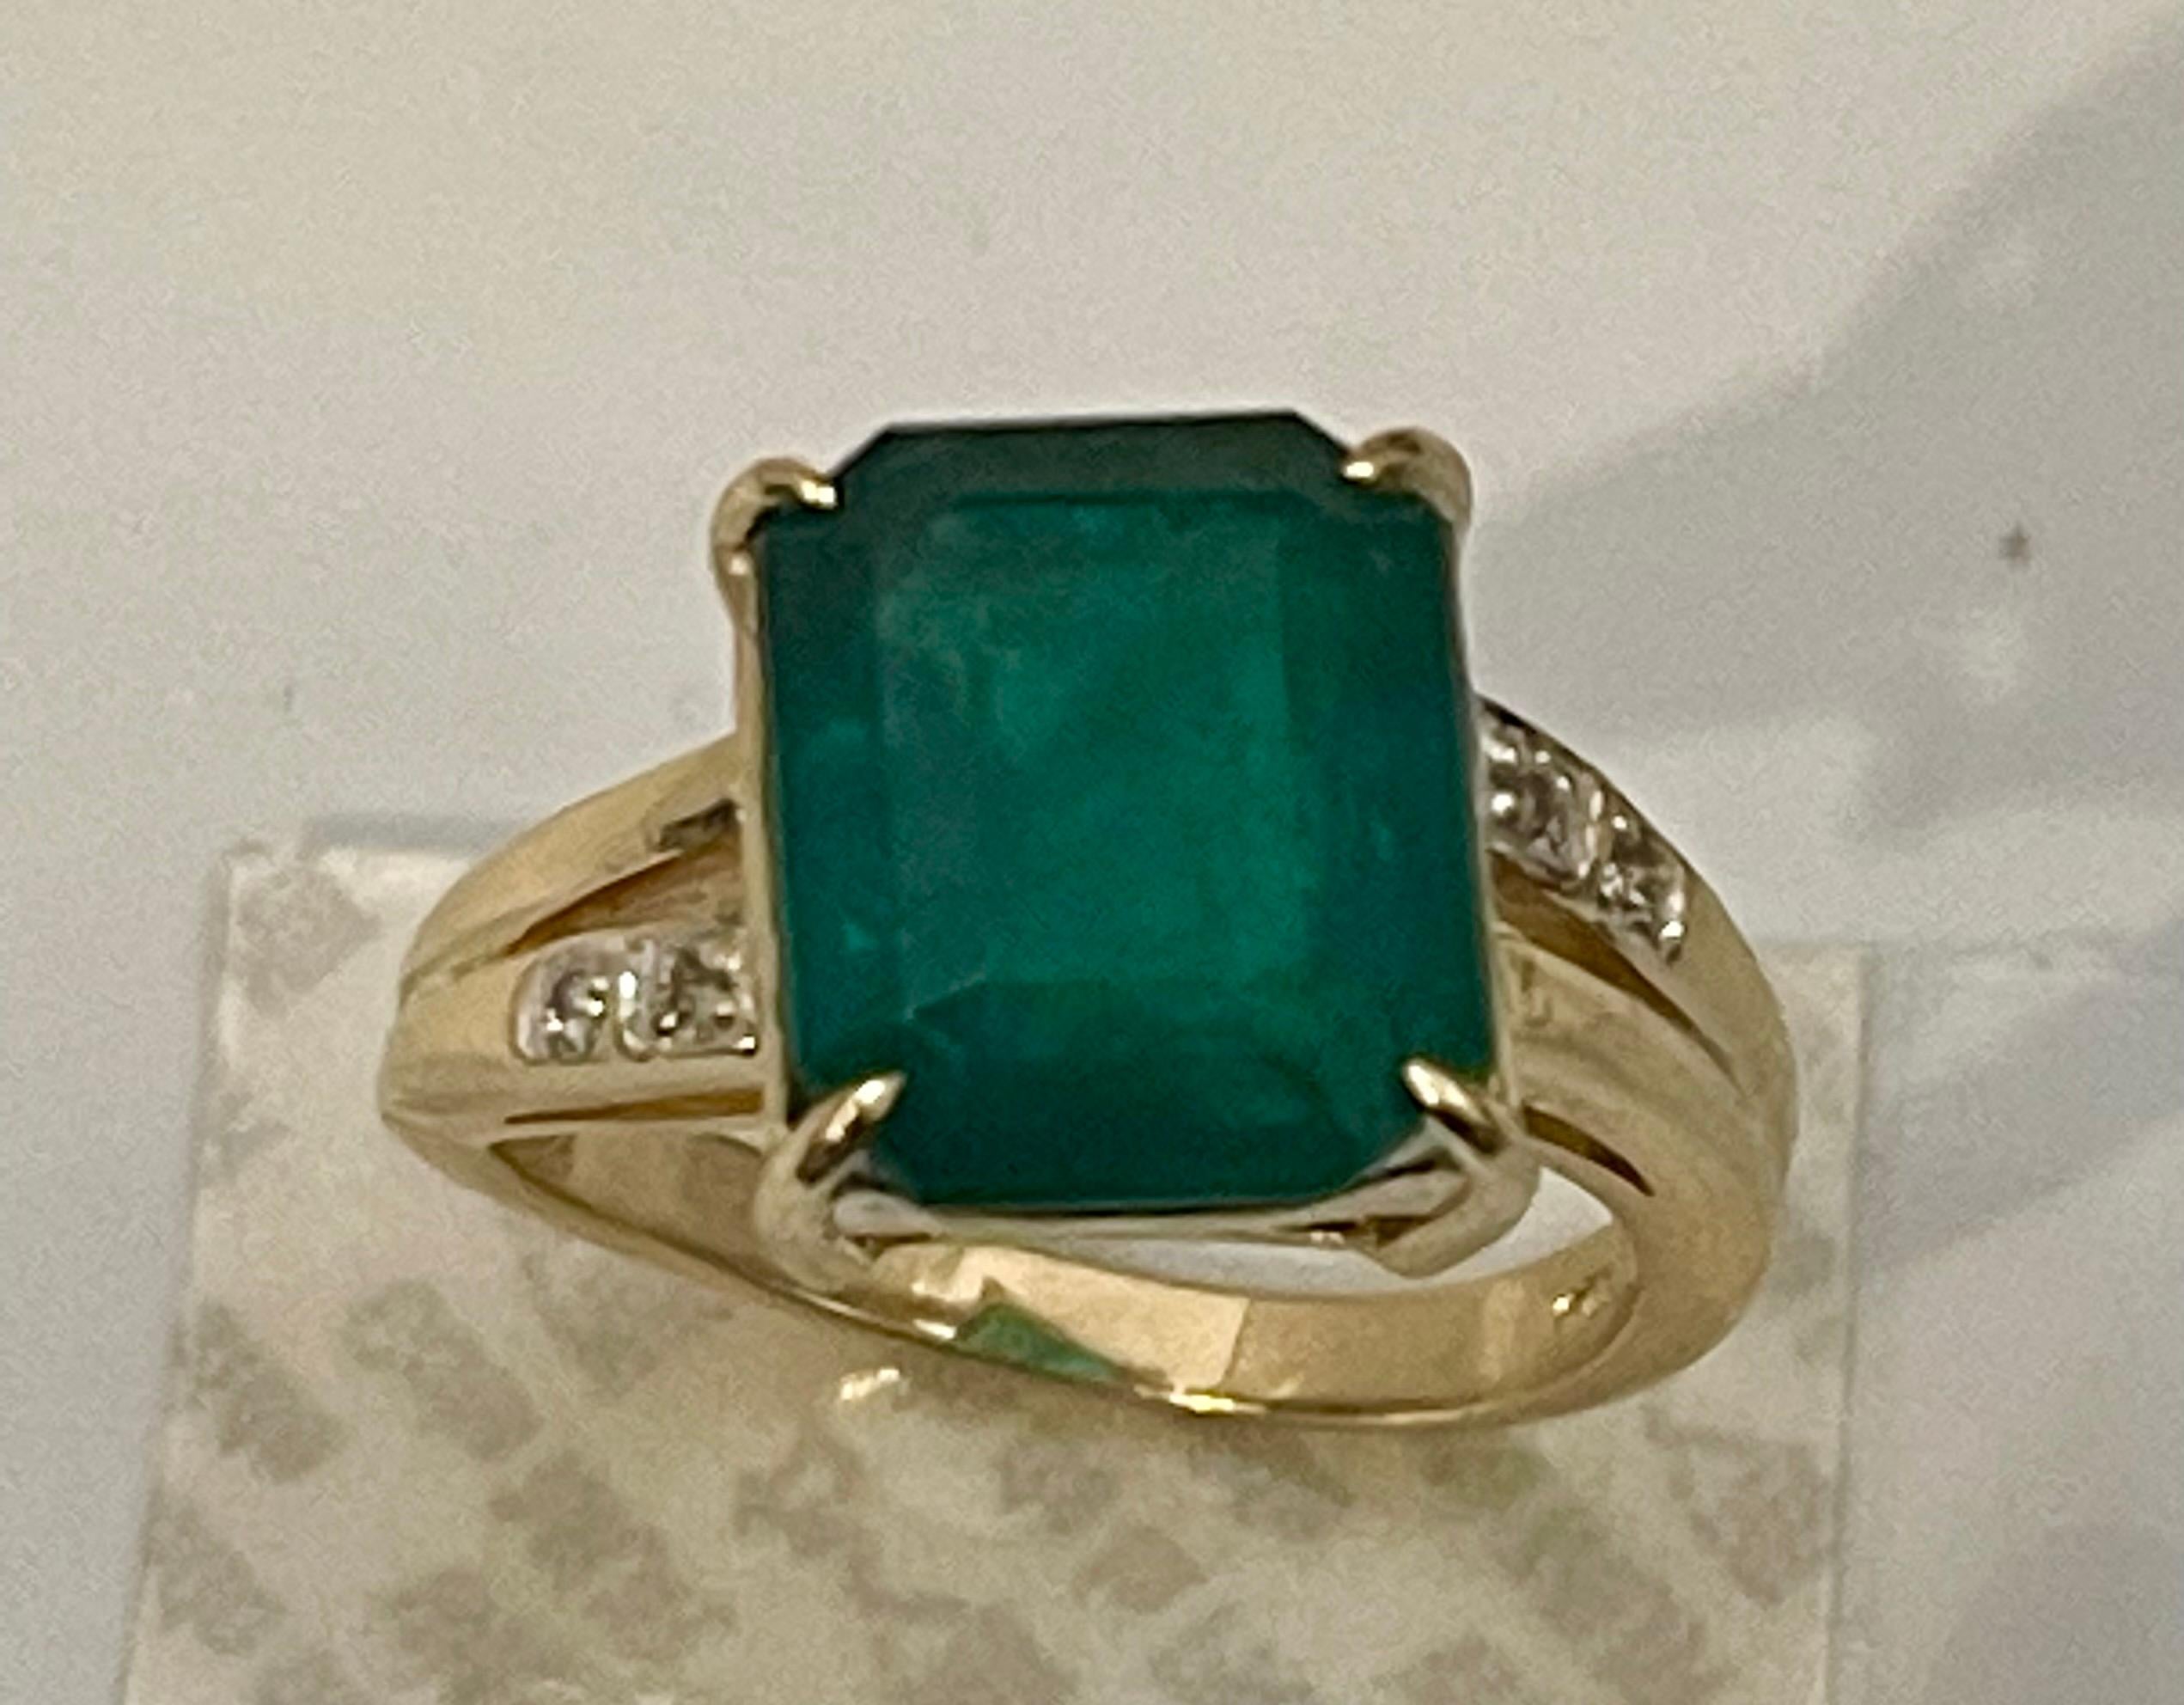 4.5 Carat Natural Emerald Cut Emerald Ring 14 Karat Yellow Gold 1